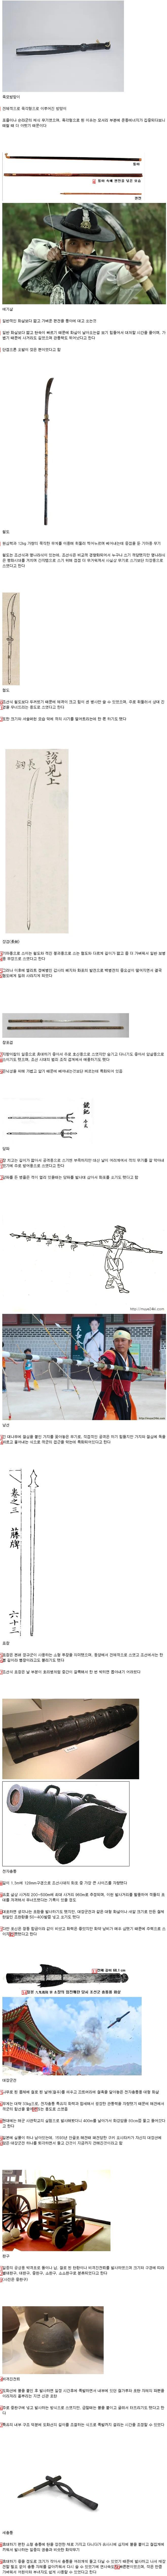 조선시대 무기 모음집